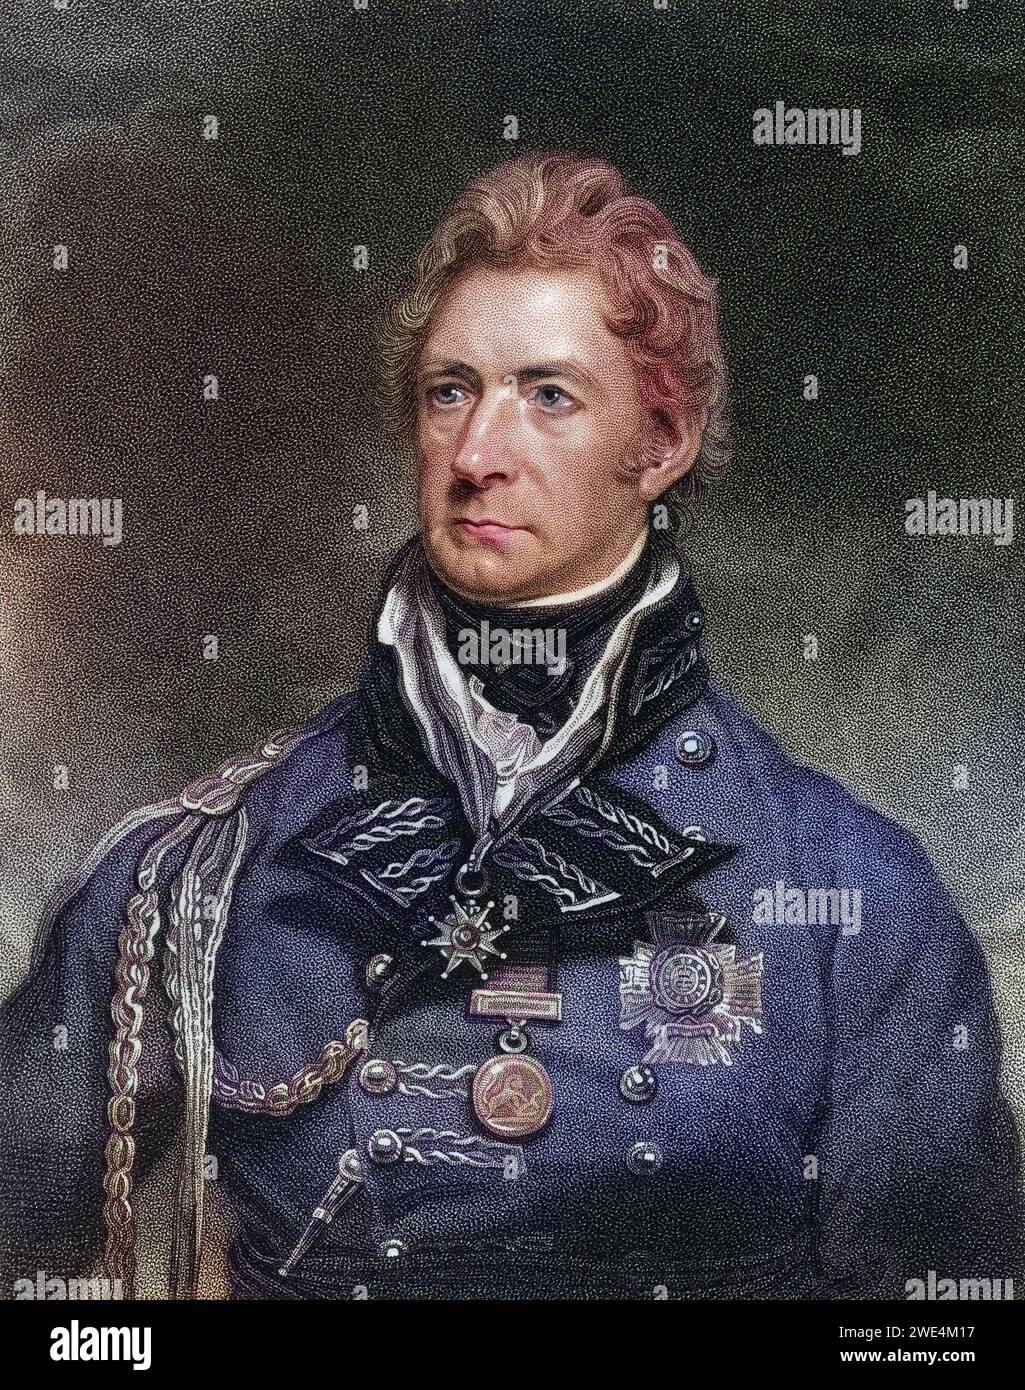 Sir Thomas Munro 1st Baronet 1761 to 1827 englischer Verwalter in Indien, Historisch, digital restaurierte Reproduktion von einer Vorlage aus dem 19. Jahrhundert, Record date not stated Stock Photo